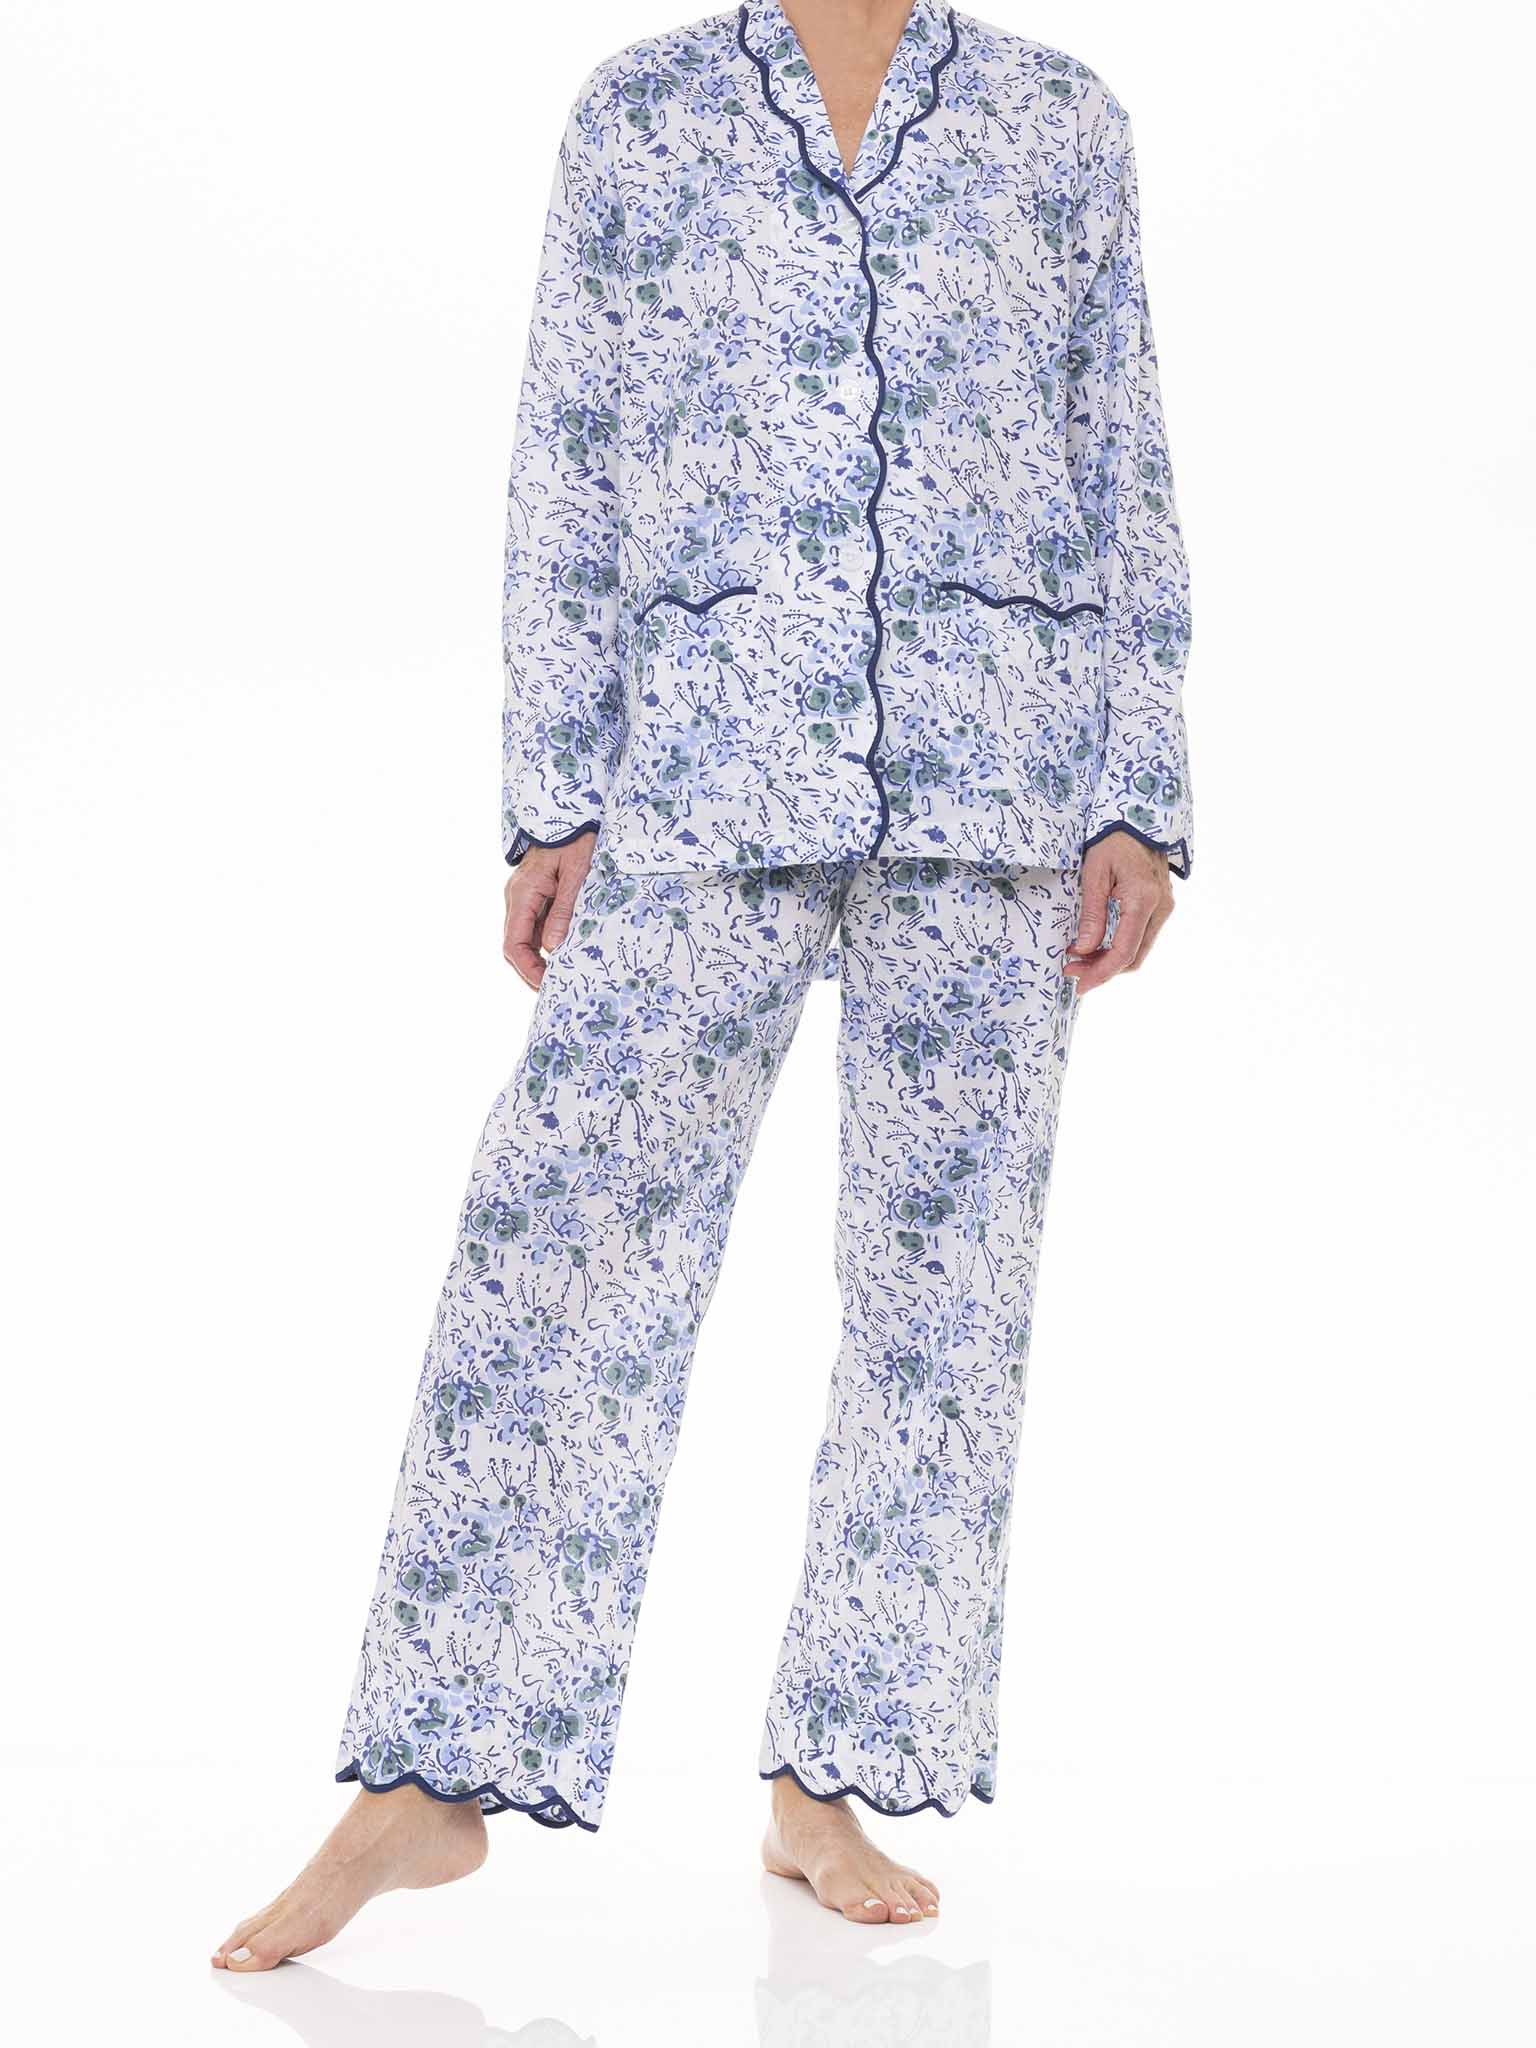 Women's Blue Floral PJ Set - Ivory/Blue Floral - Jack & Gray Kids